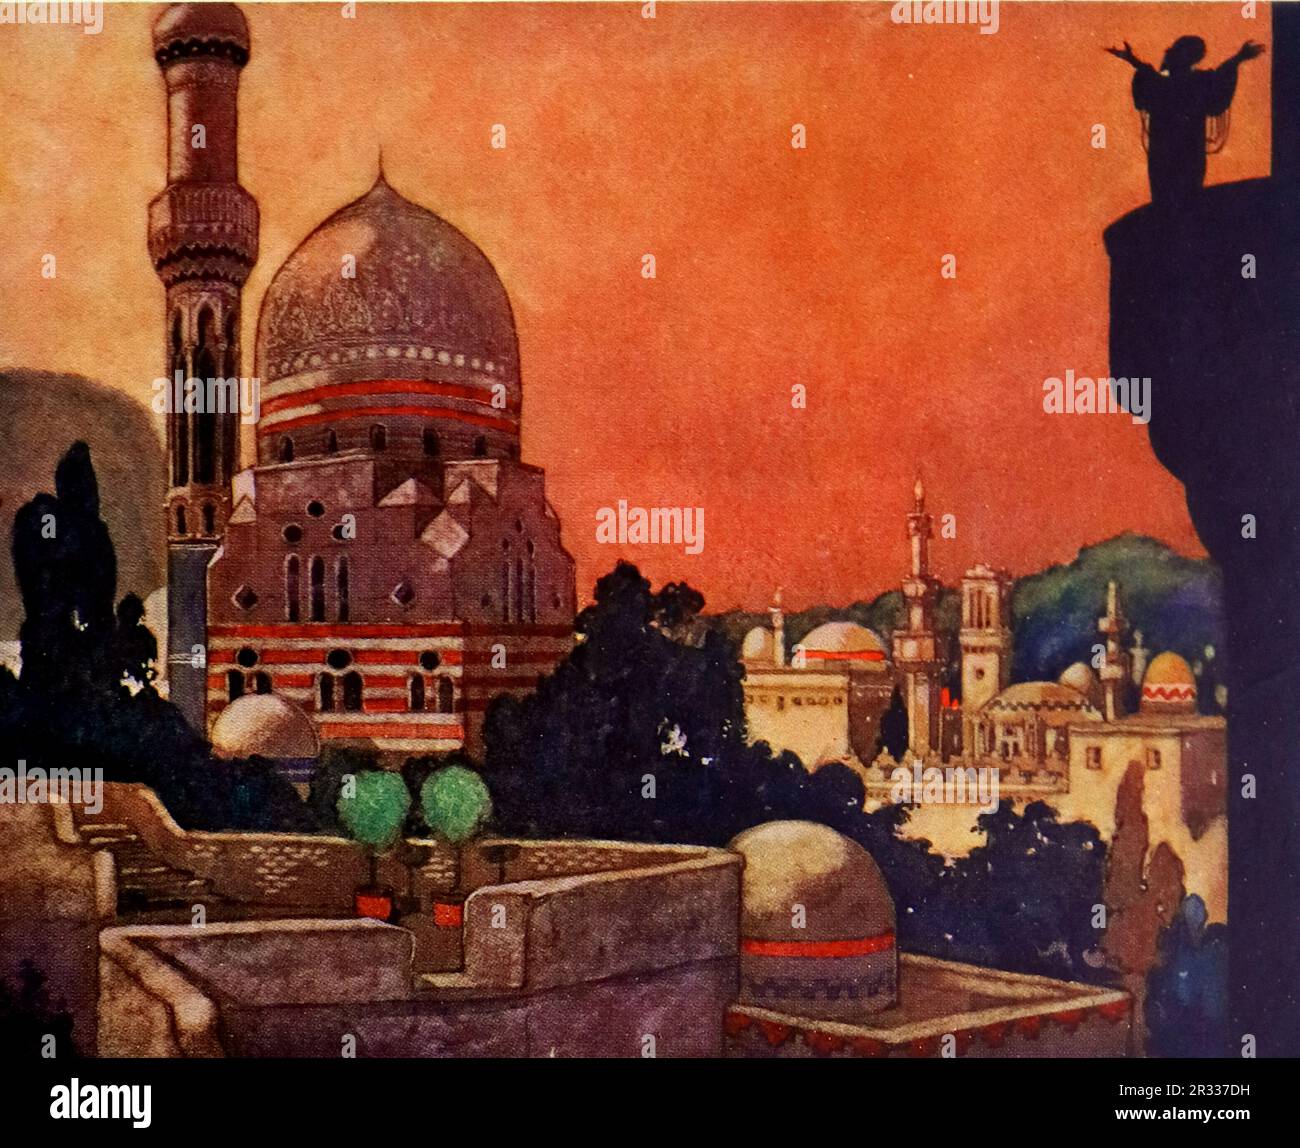 Von Rene Bull Farbe: Ein Muezzin auf einem dunklen Turm mit Blick auf Paläste und Kuppelstrukturen. Vom Rubaiyat von Omar Khayyam. Stockfoto